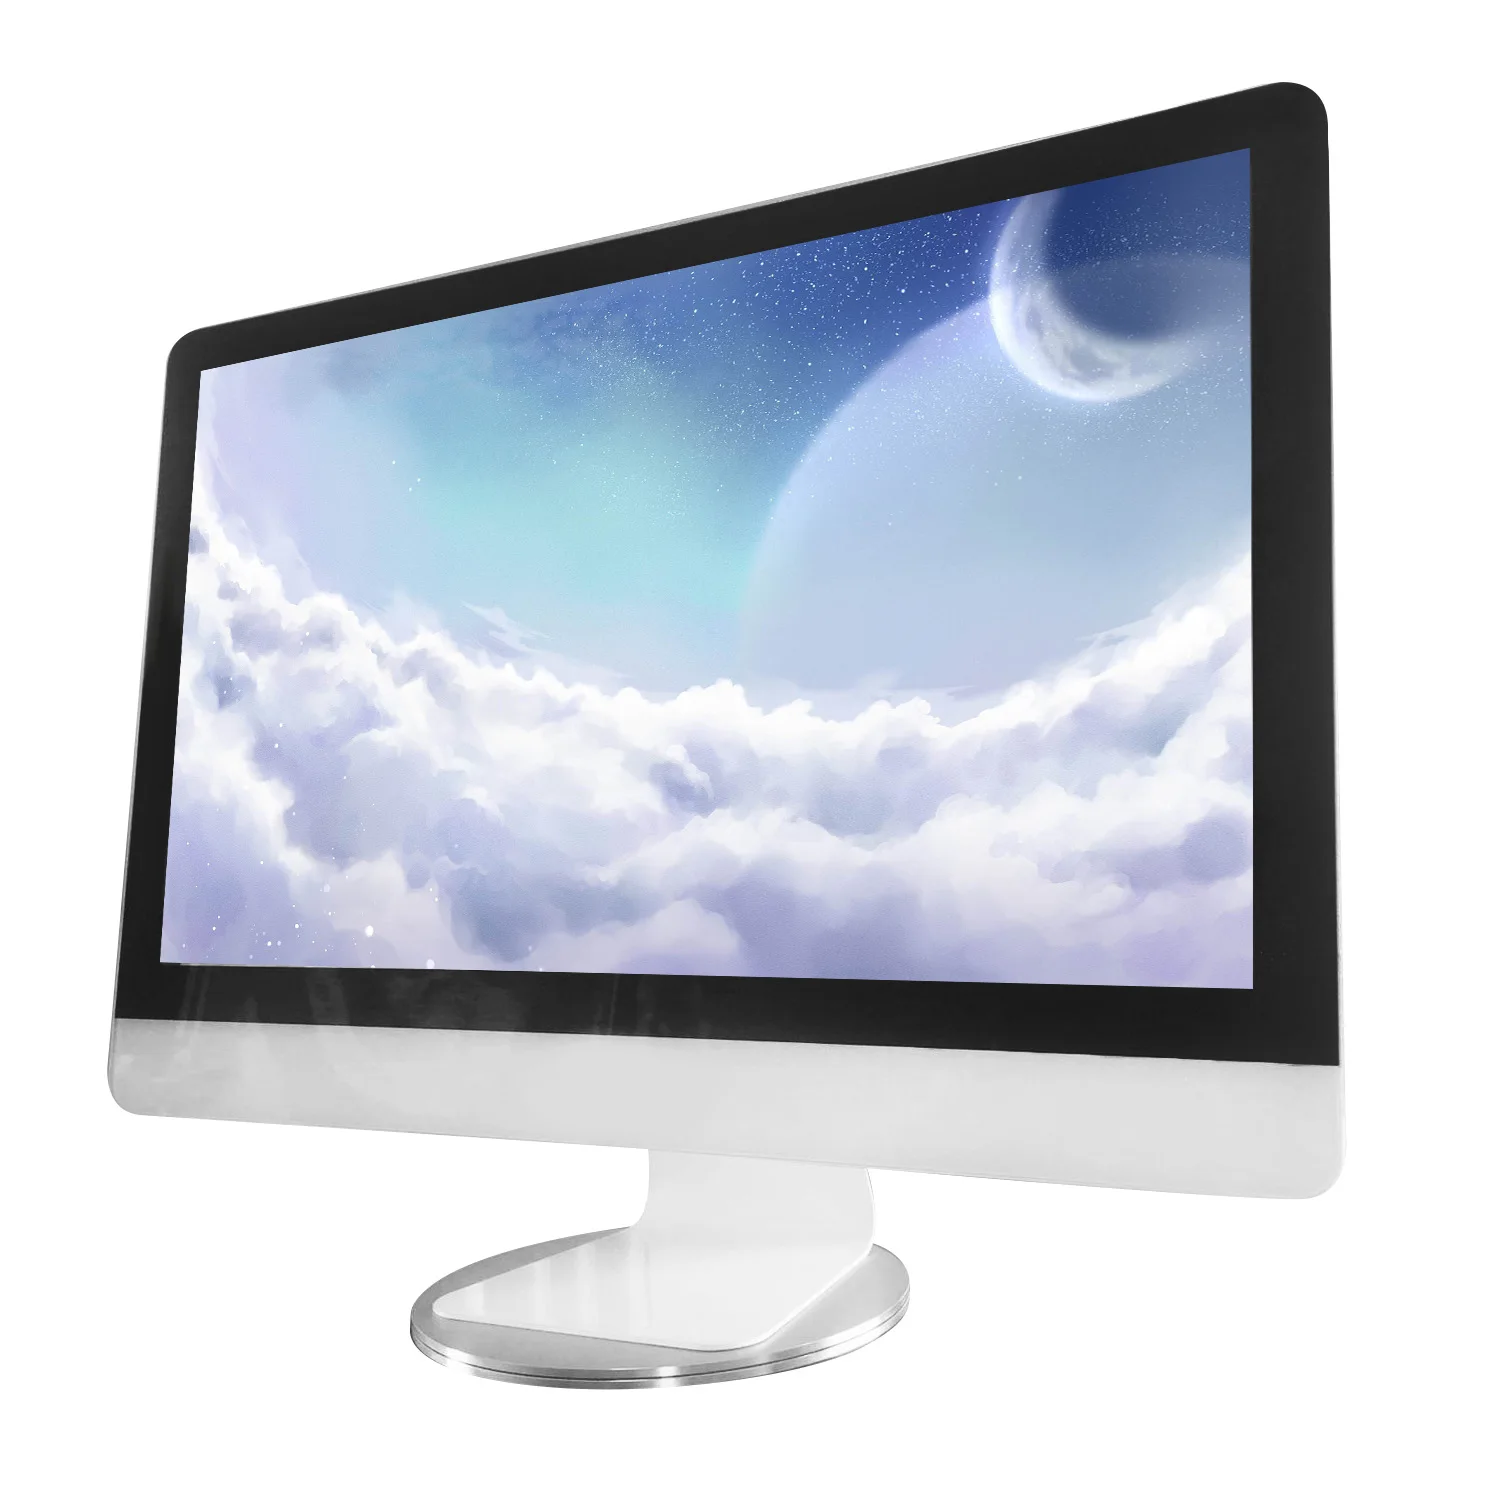 Besegad компьютерный монитор Стенд вращение на 360 градусов нескользящий Алюминиевый Монитор Базовая док-станция для Apple iMac Mac телевизионный проектор